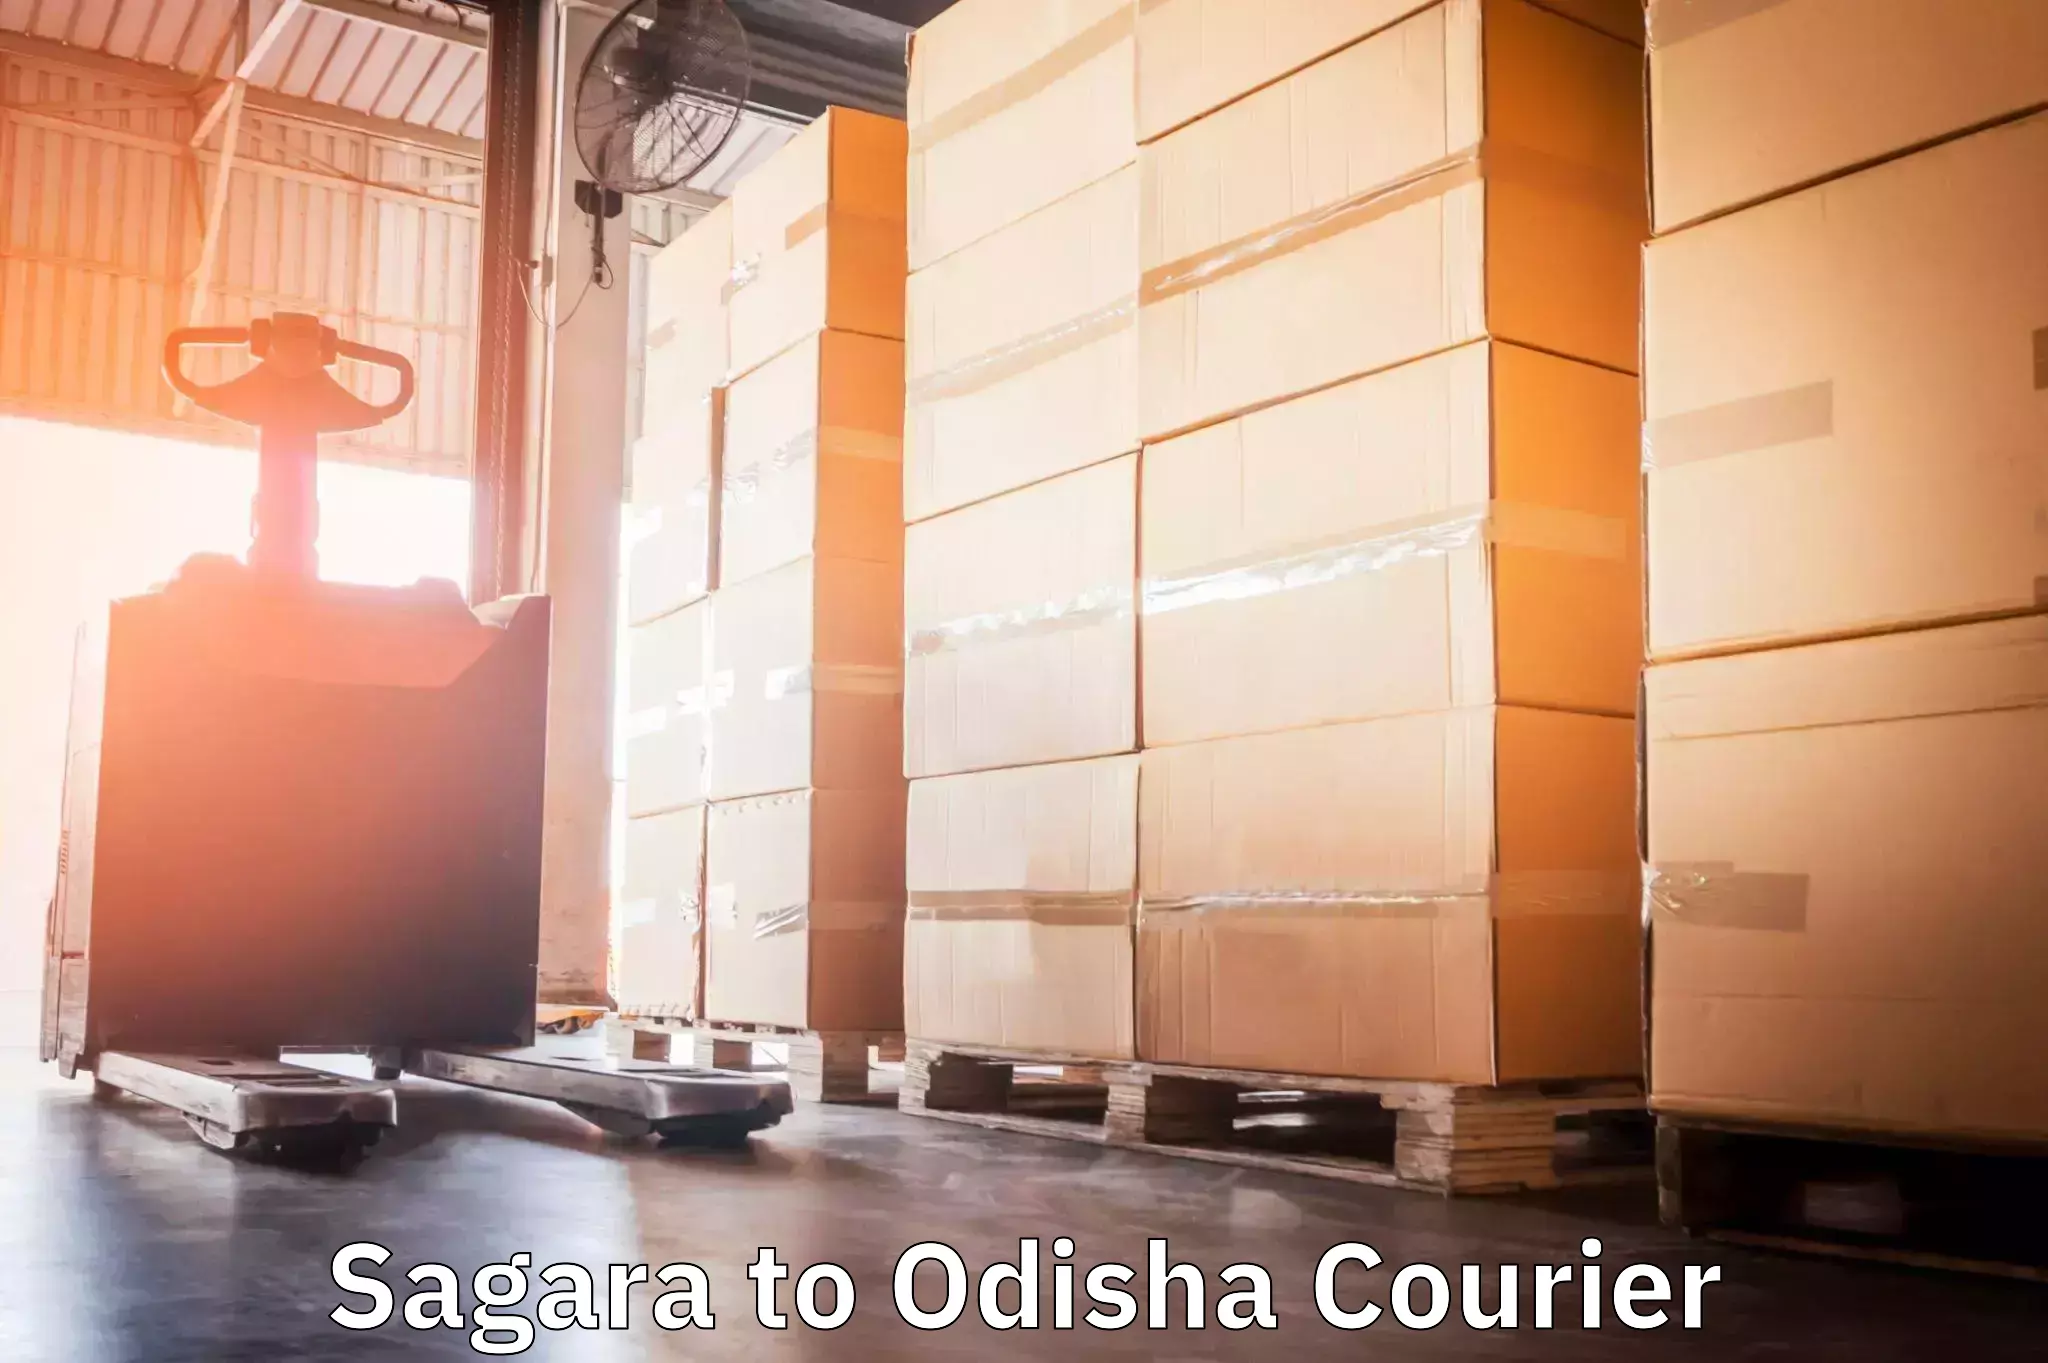 User-friendly courier app Sagara to Sohela